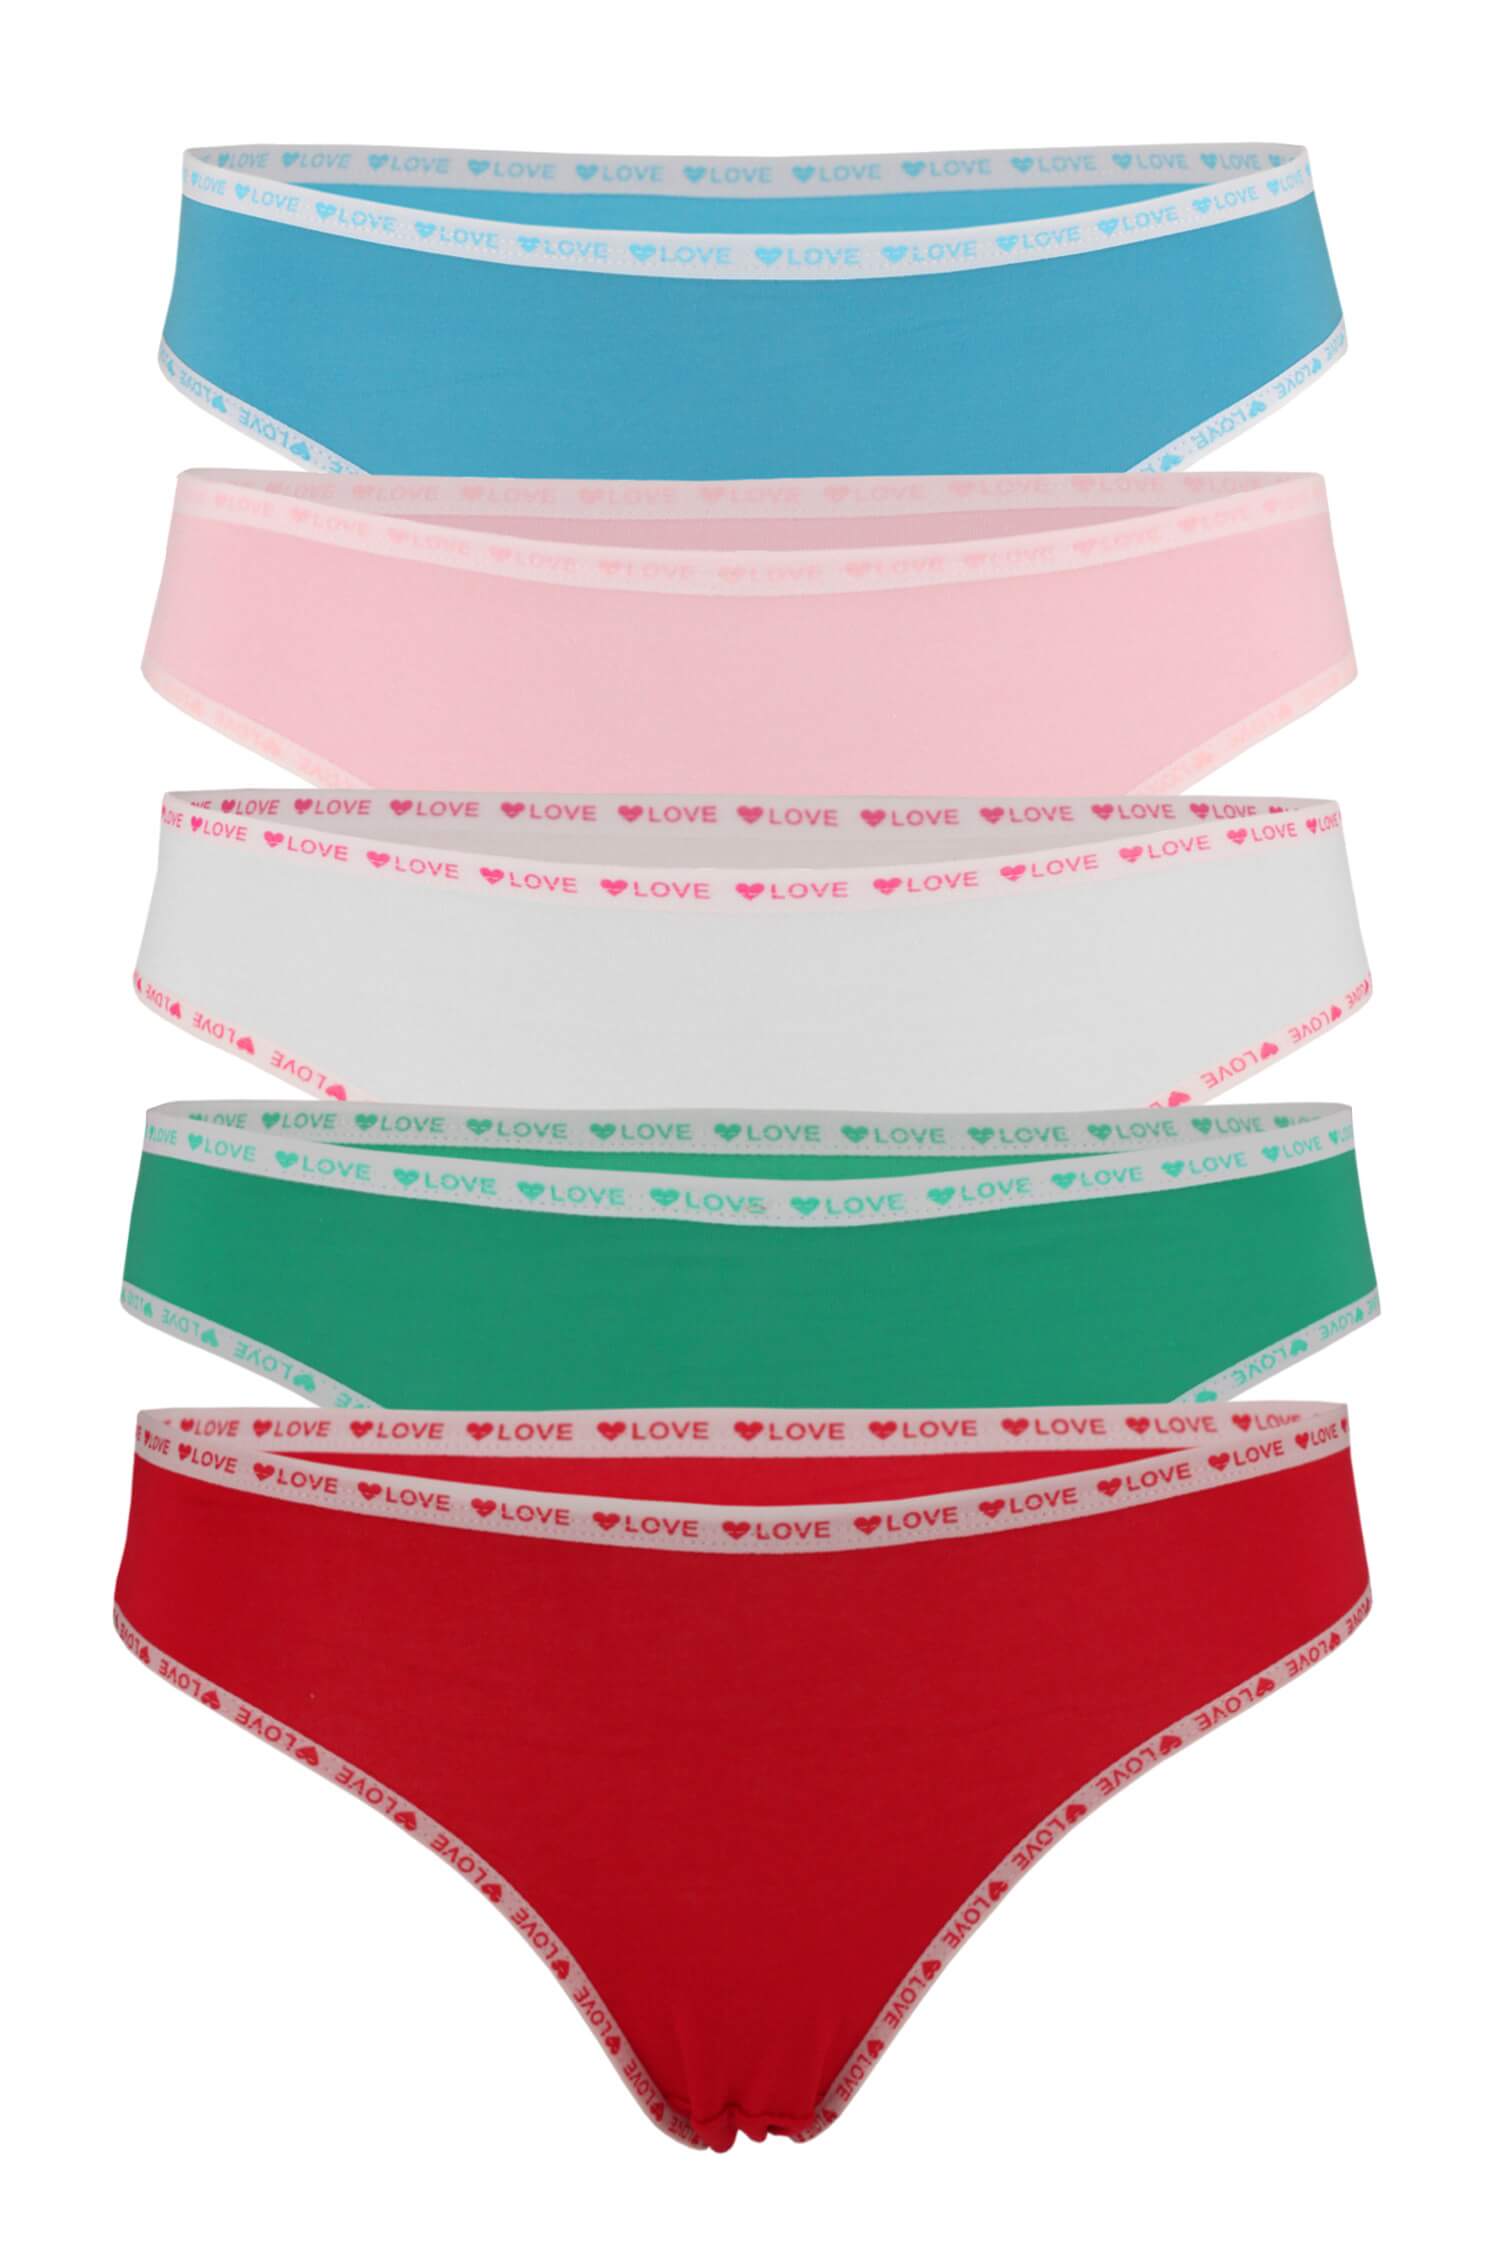 Corazon bavlněné bikini kalhotky K083-5 ks L vícebarevná